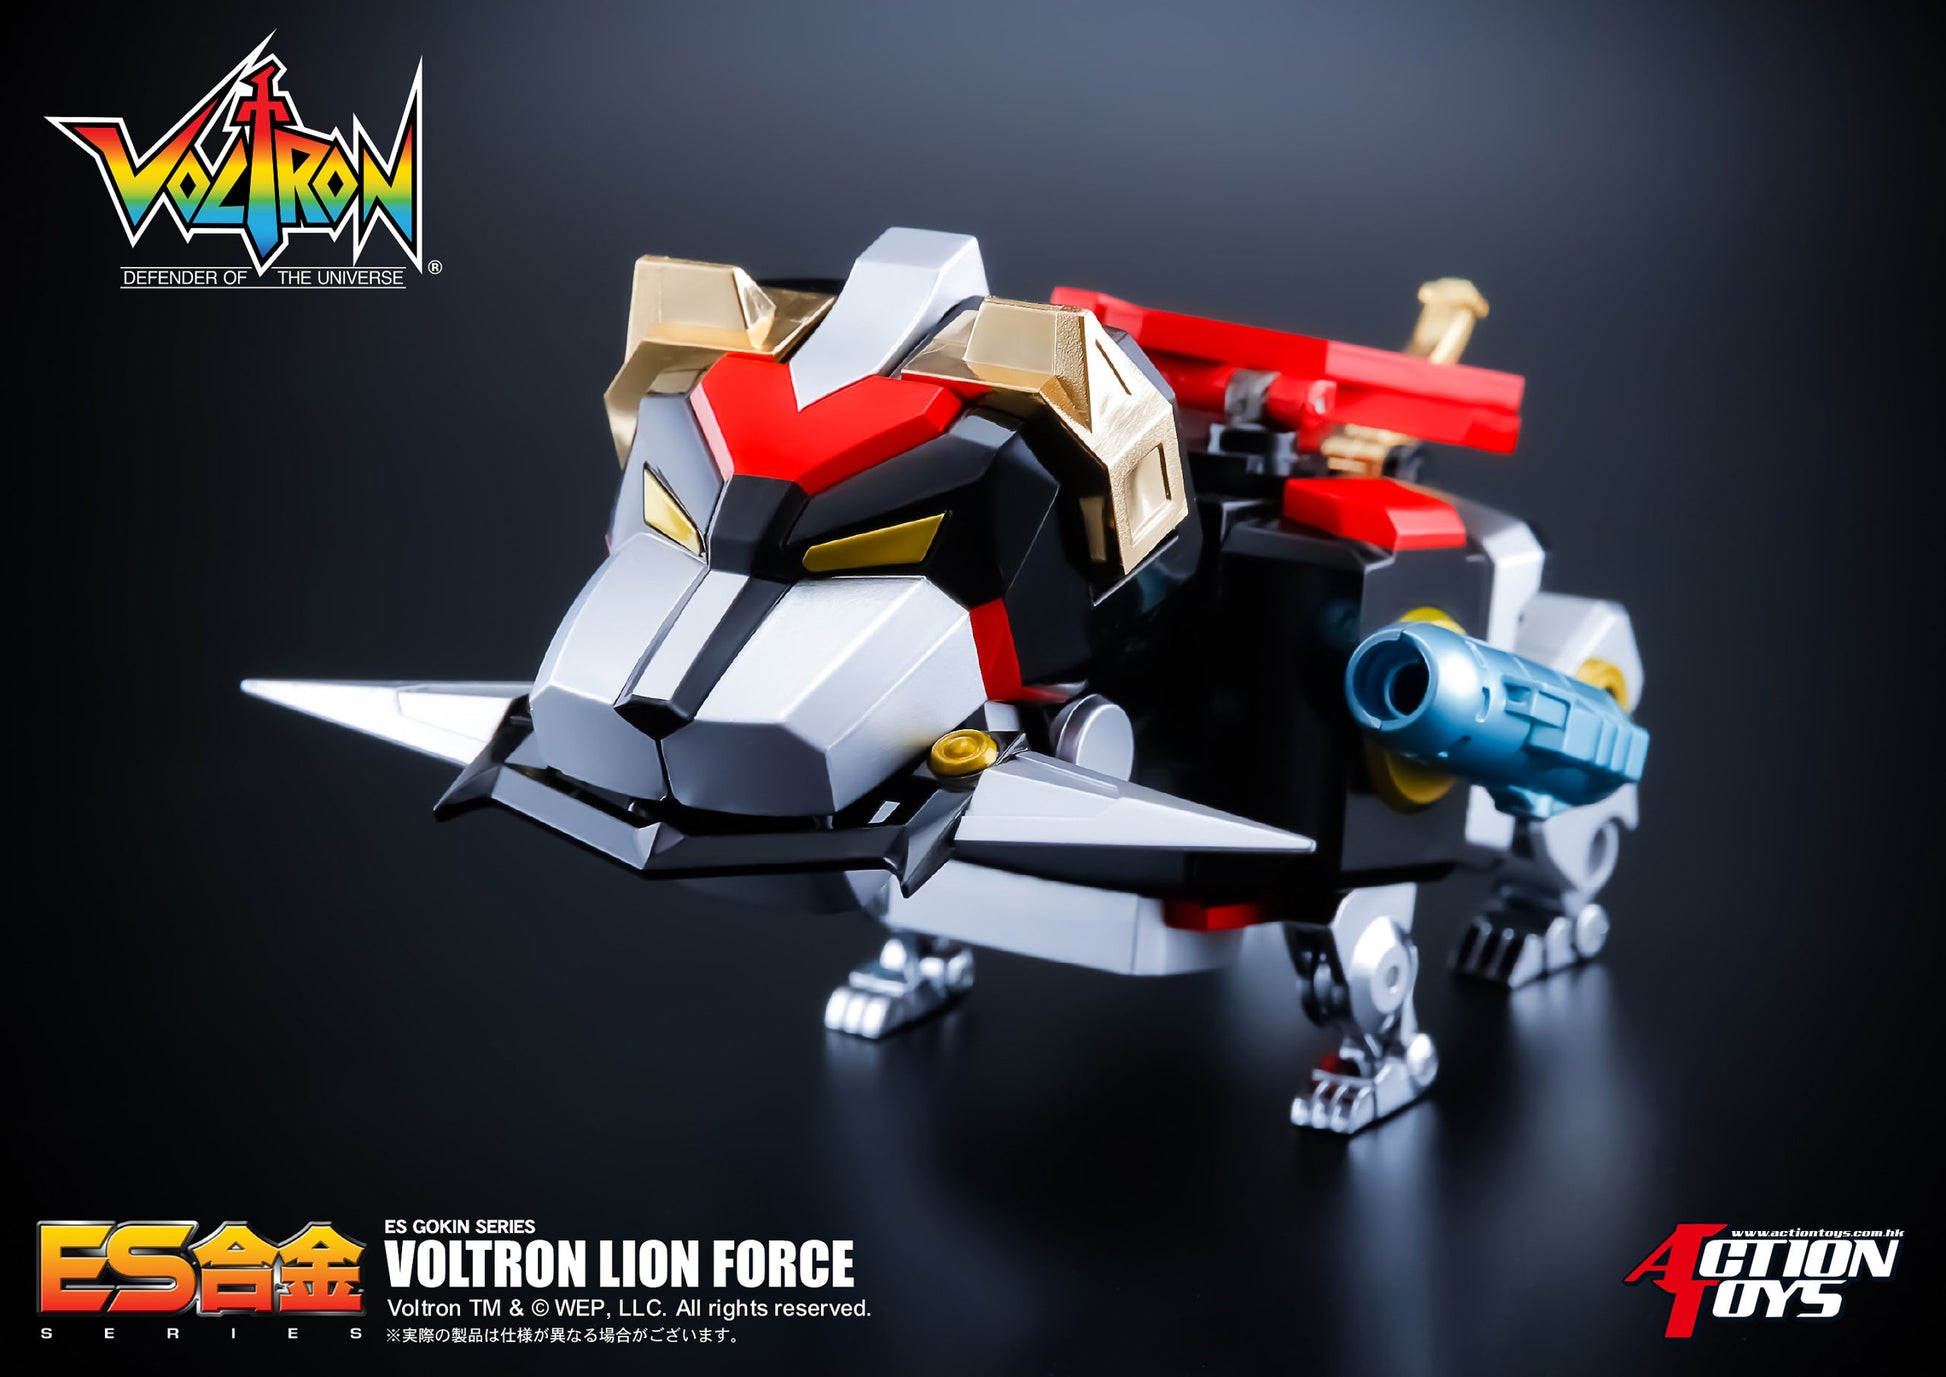 ES Alloy "Voltron: Defender of the Universe" Voltron Lion Force